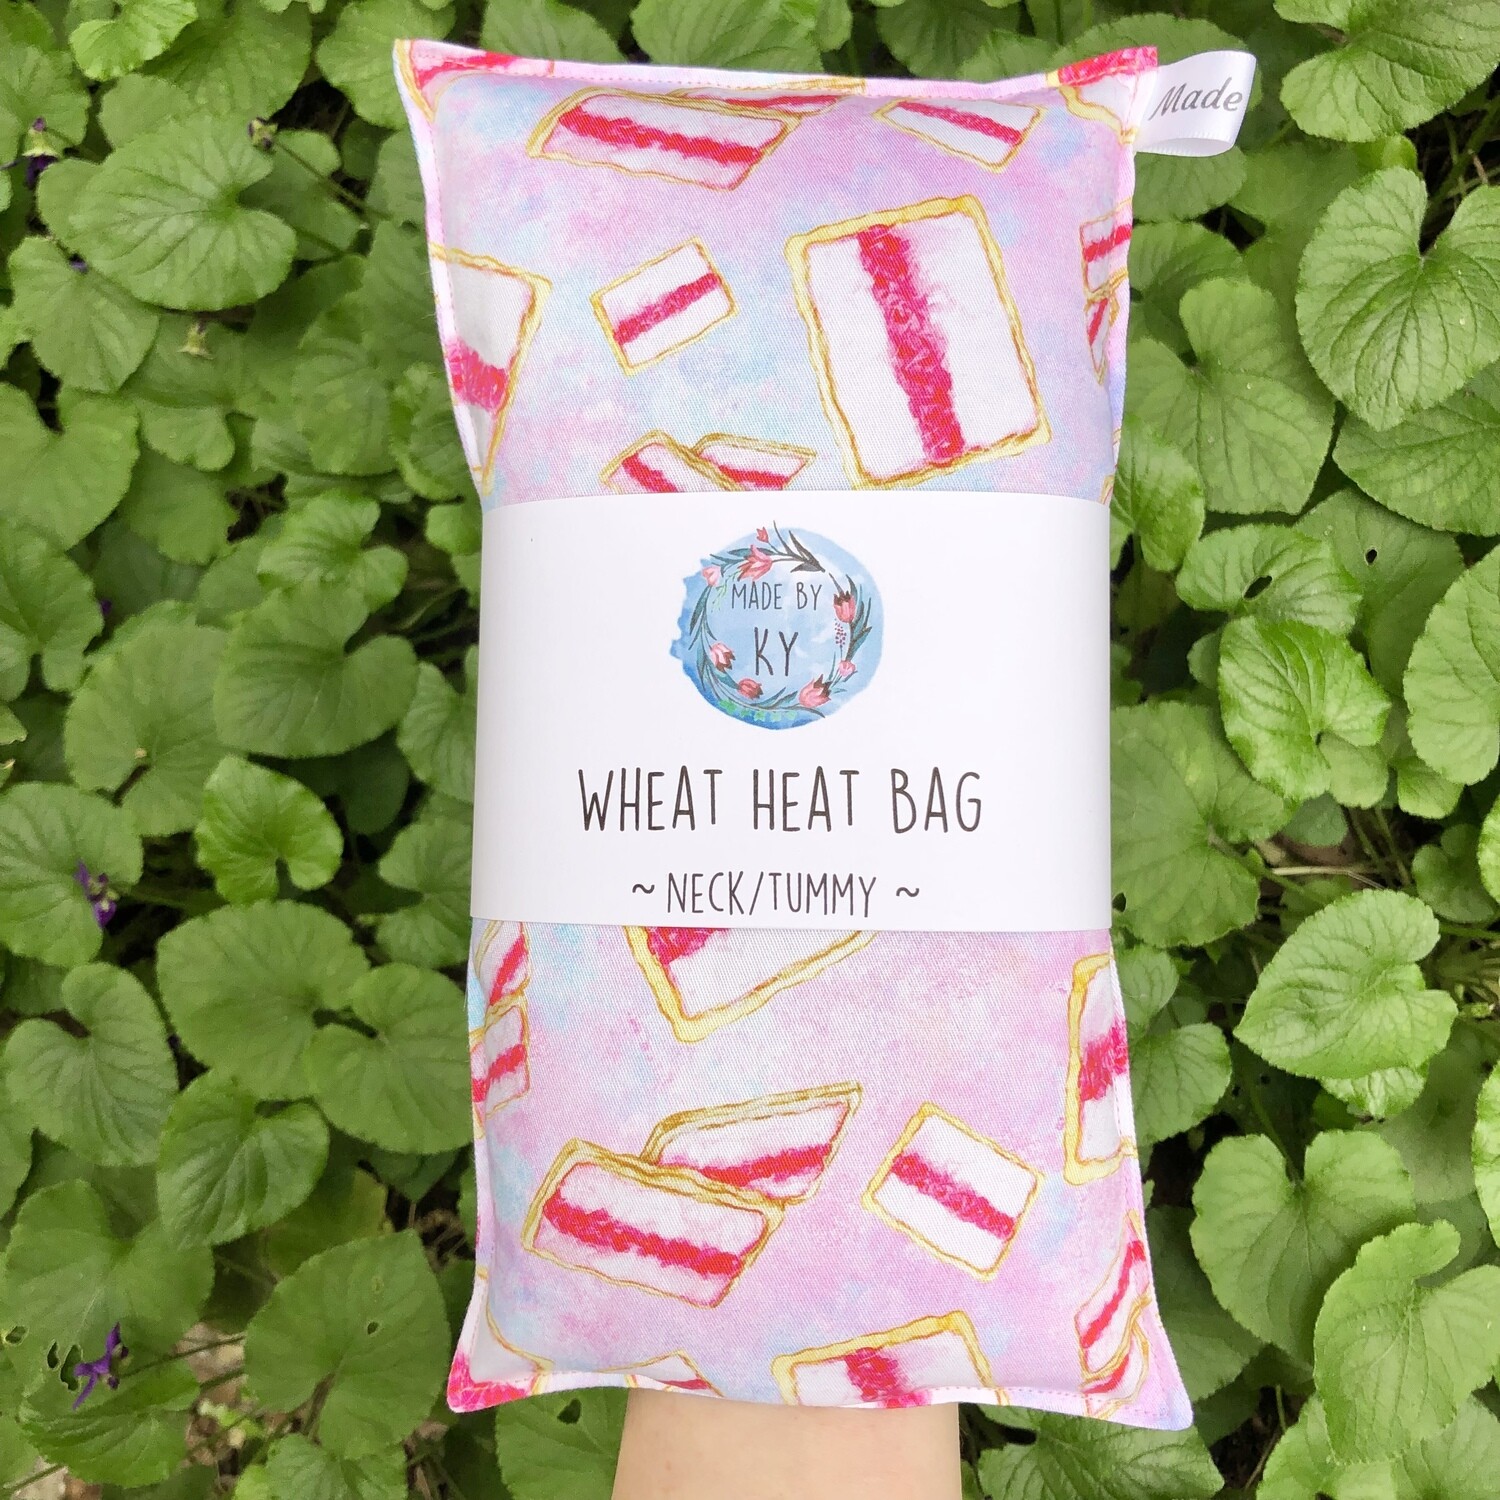 Aussie Iced Vovo’s - Wheat Heat Bag - Regular Size